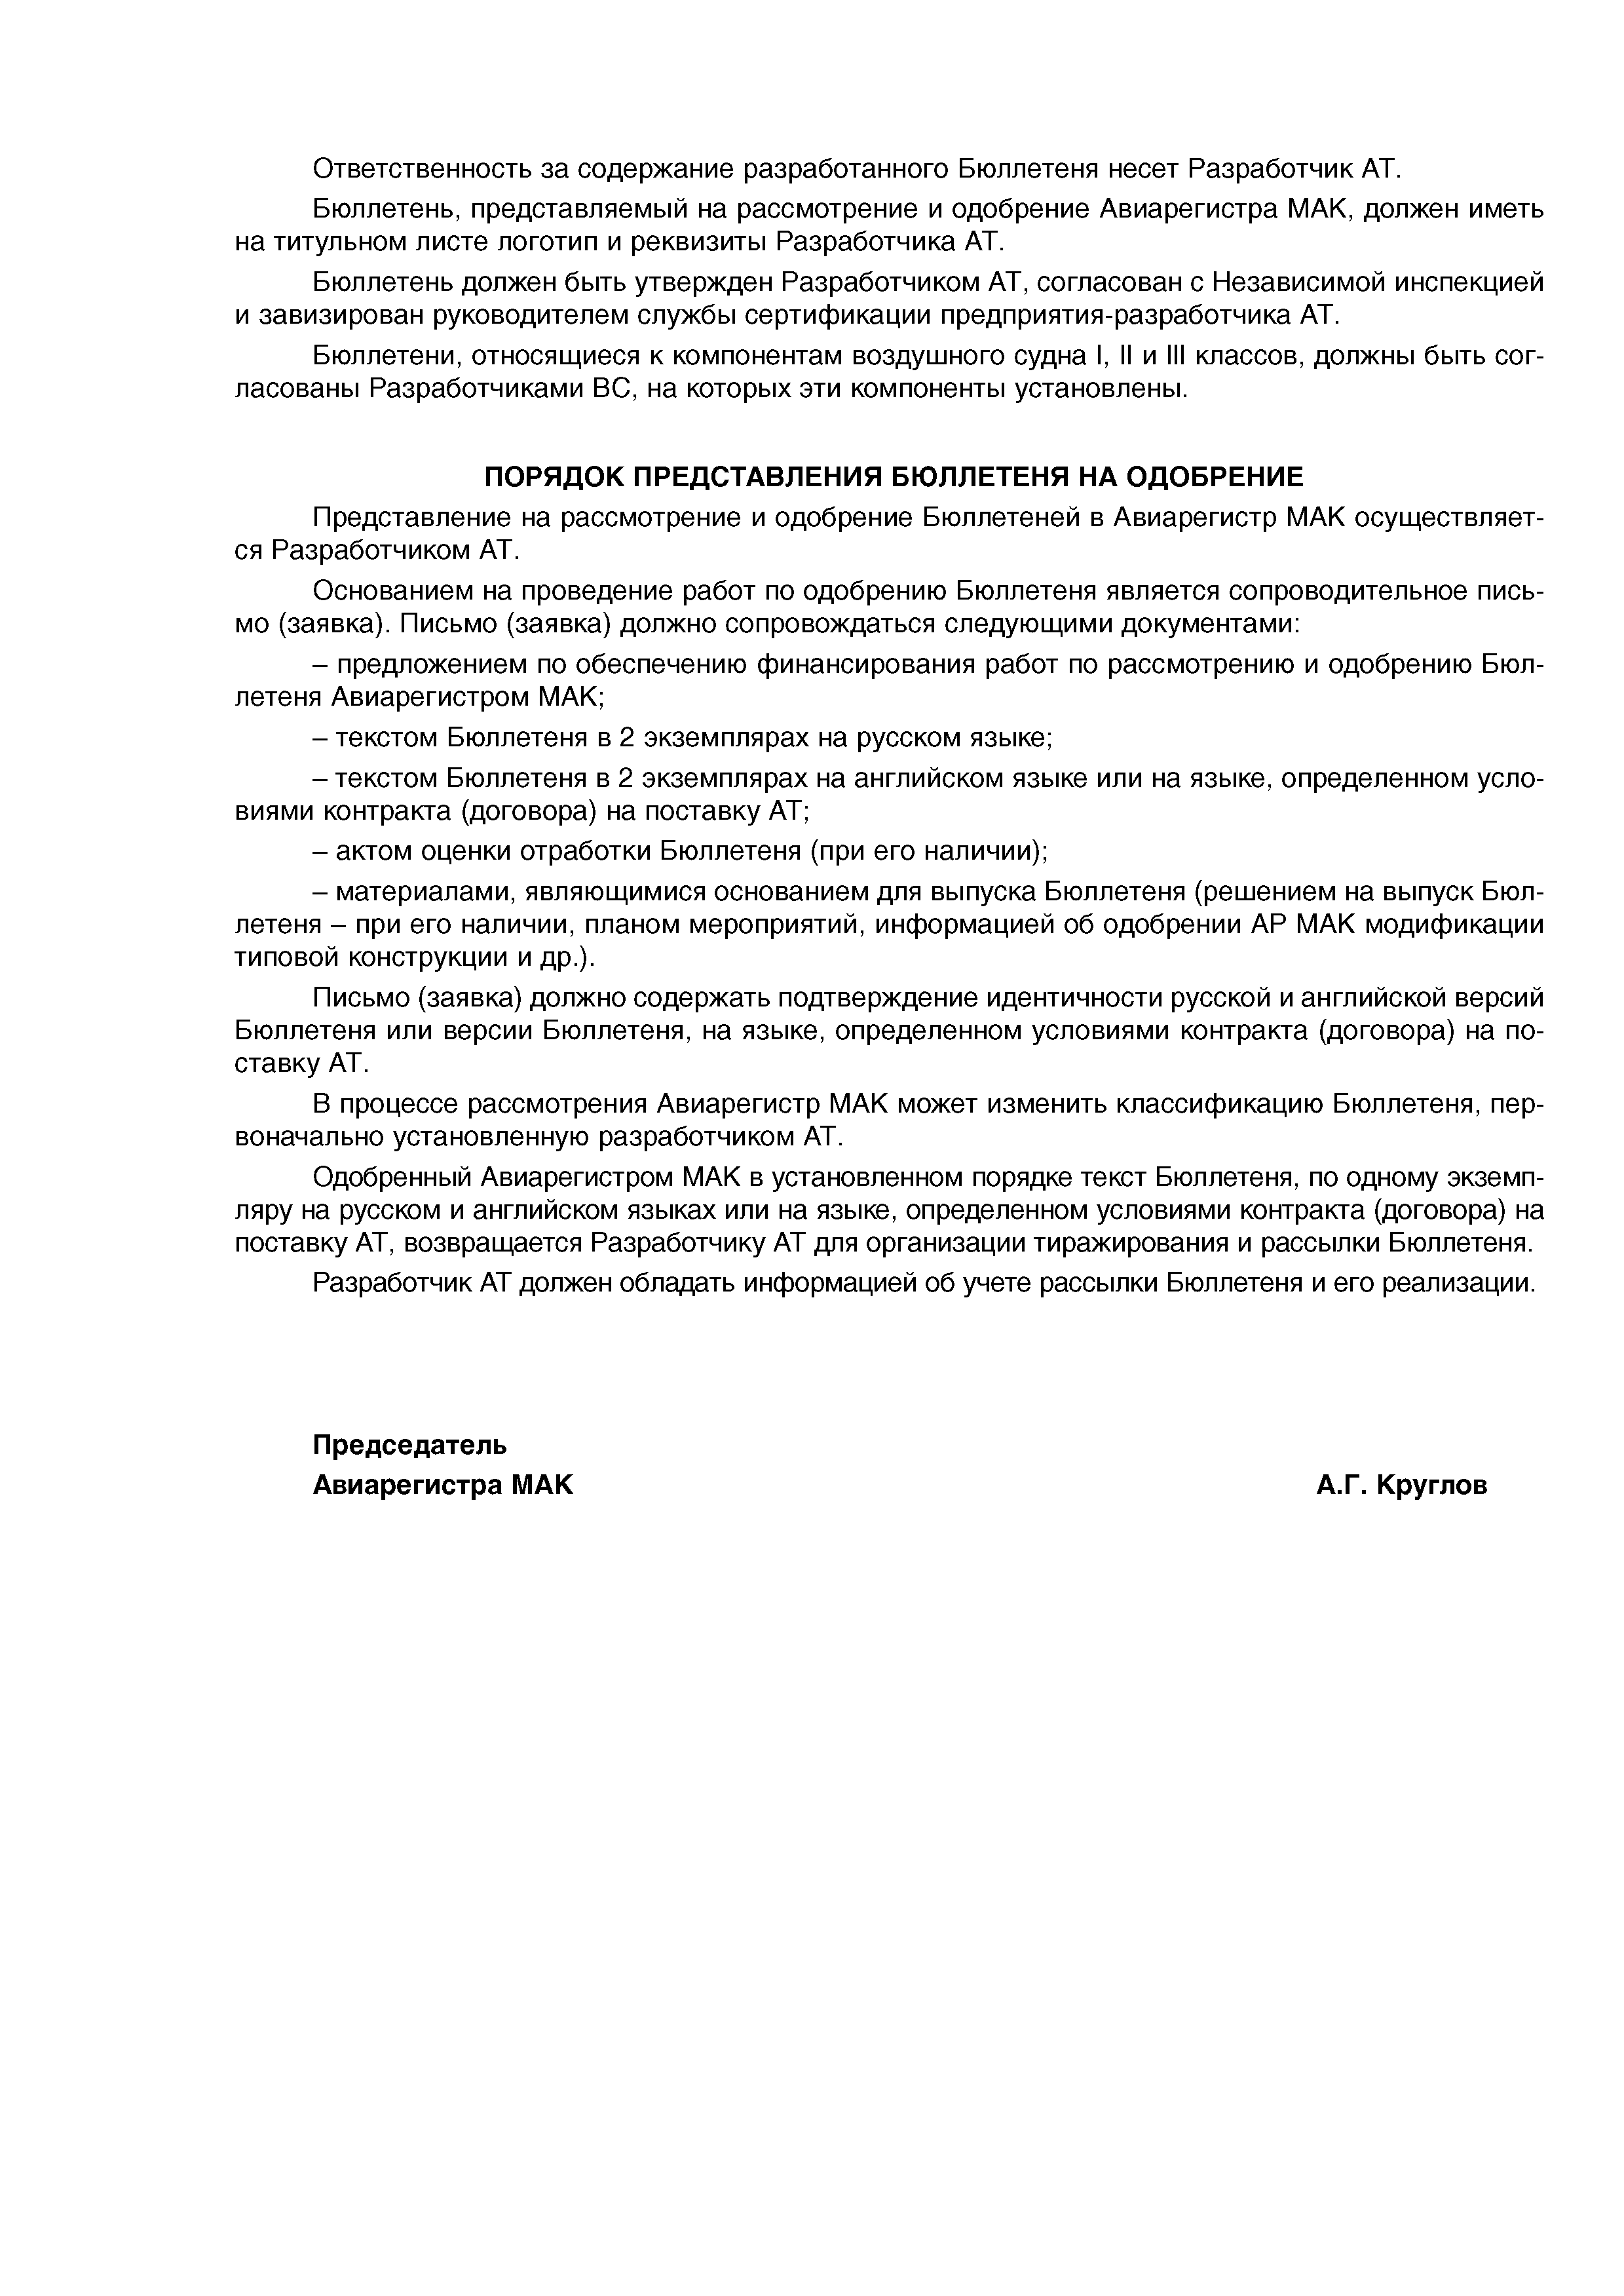 Директивное письмо 01-2004